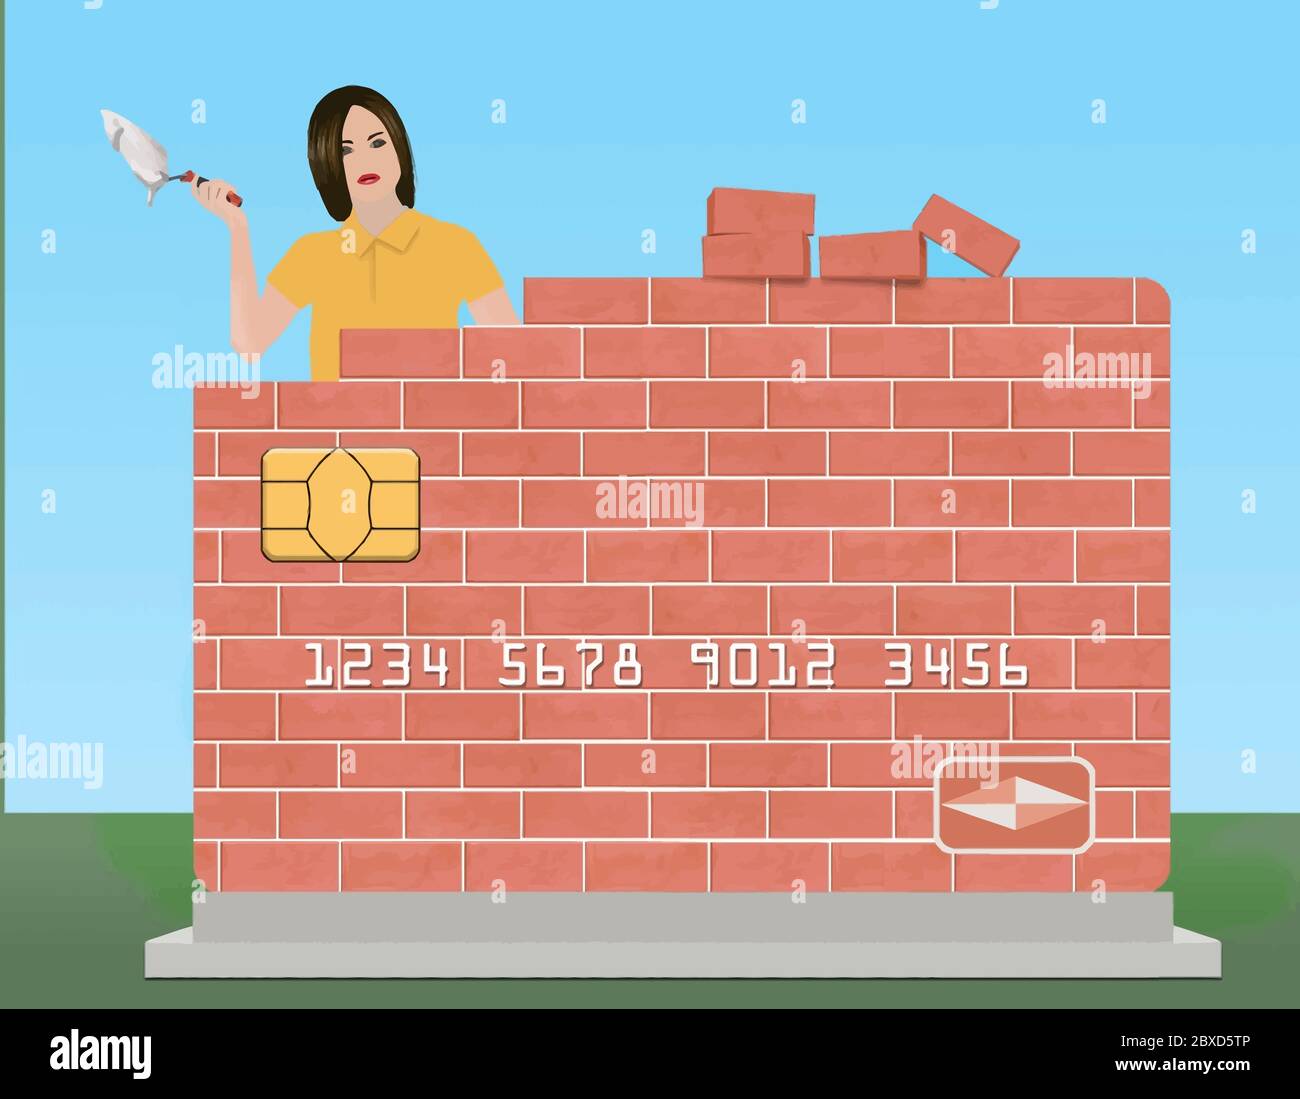 Eine junge Frau hält eine Kelle und Mörser, wie sie eine Backstein-Kreditkarte im Freien baut. Das Thema ist Wiederaufbau oder Reparatur Ihrer Bonität. Stock Vektor